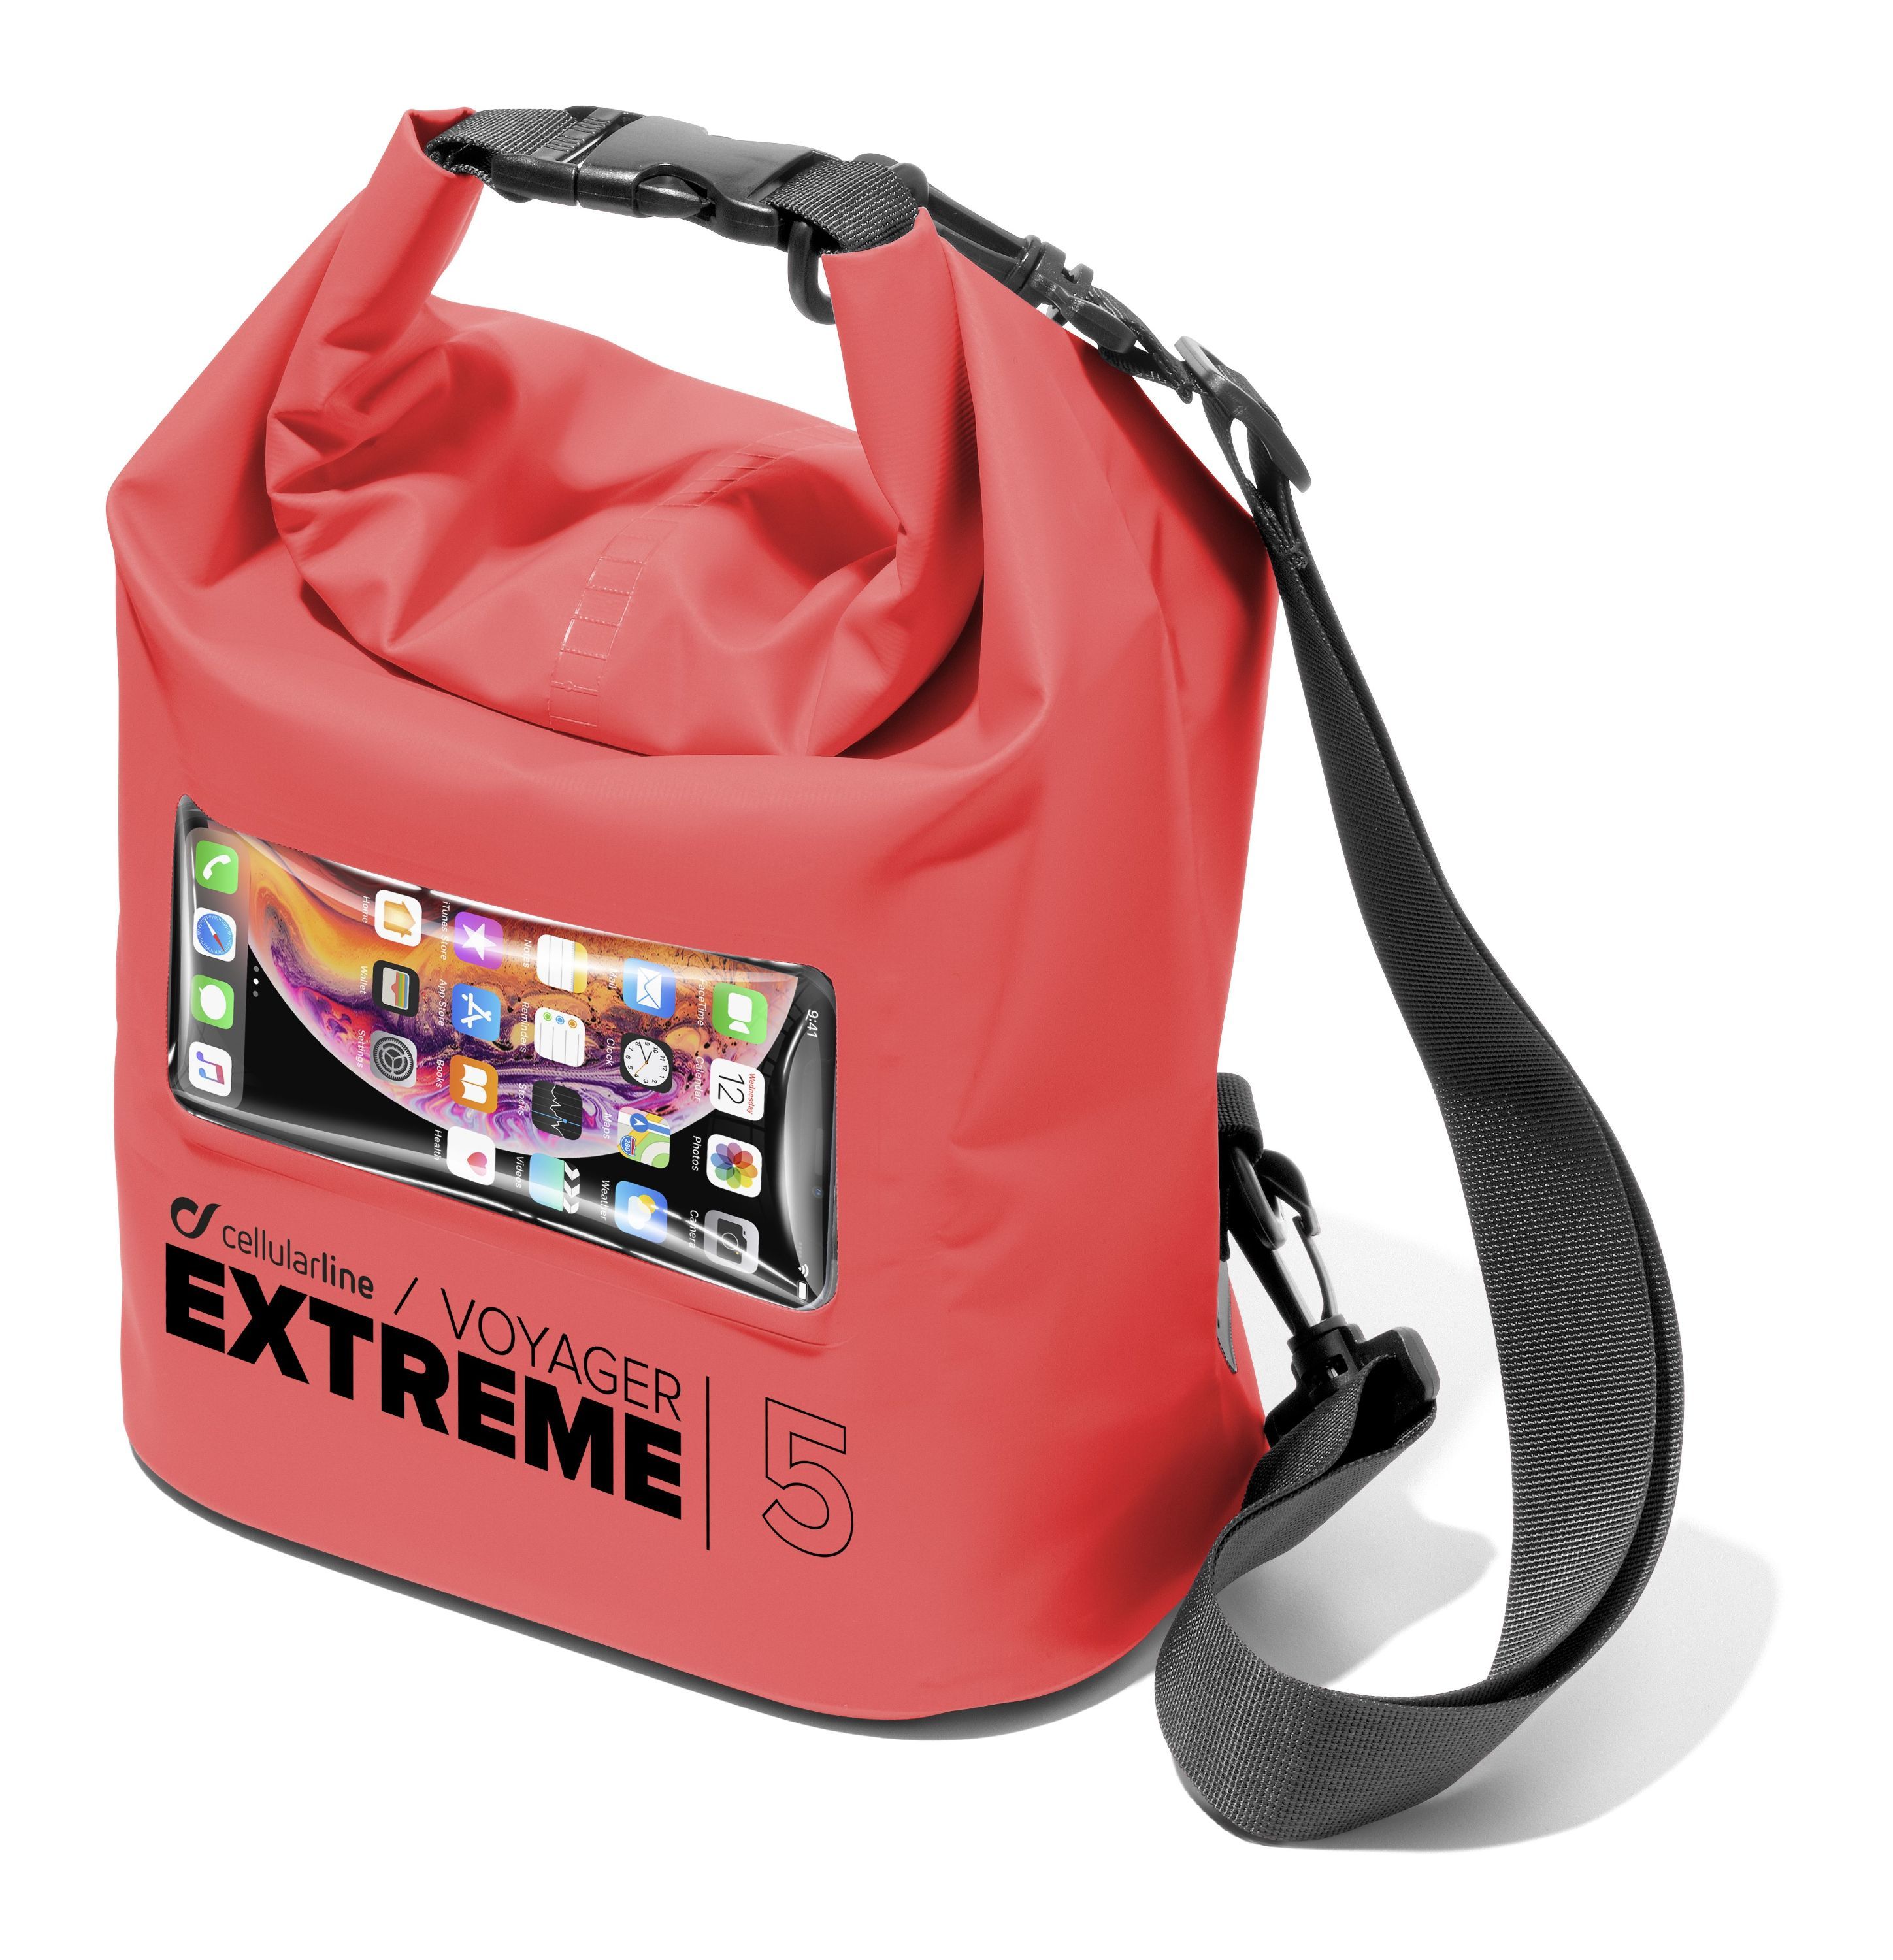 Vodotěsný vak s kapsou na mobilní telefon Voyager Extreme, 5l, červený